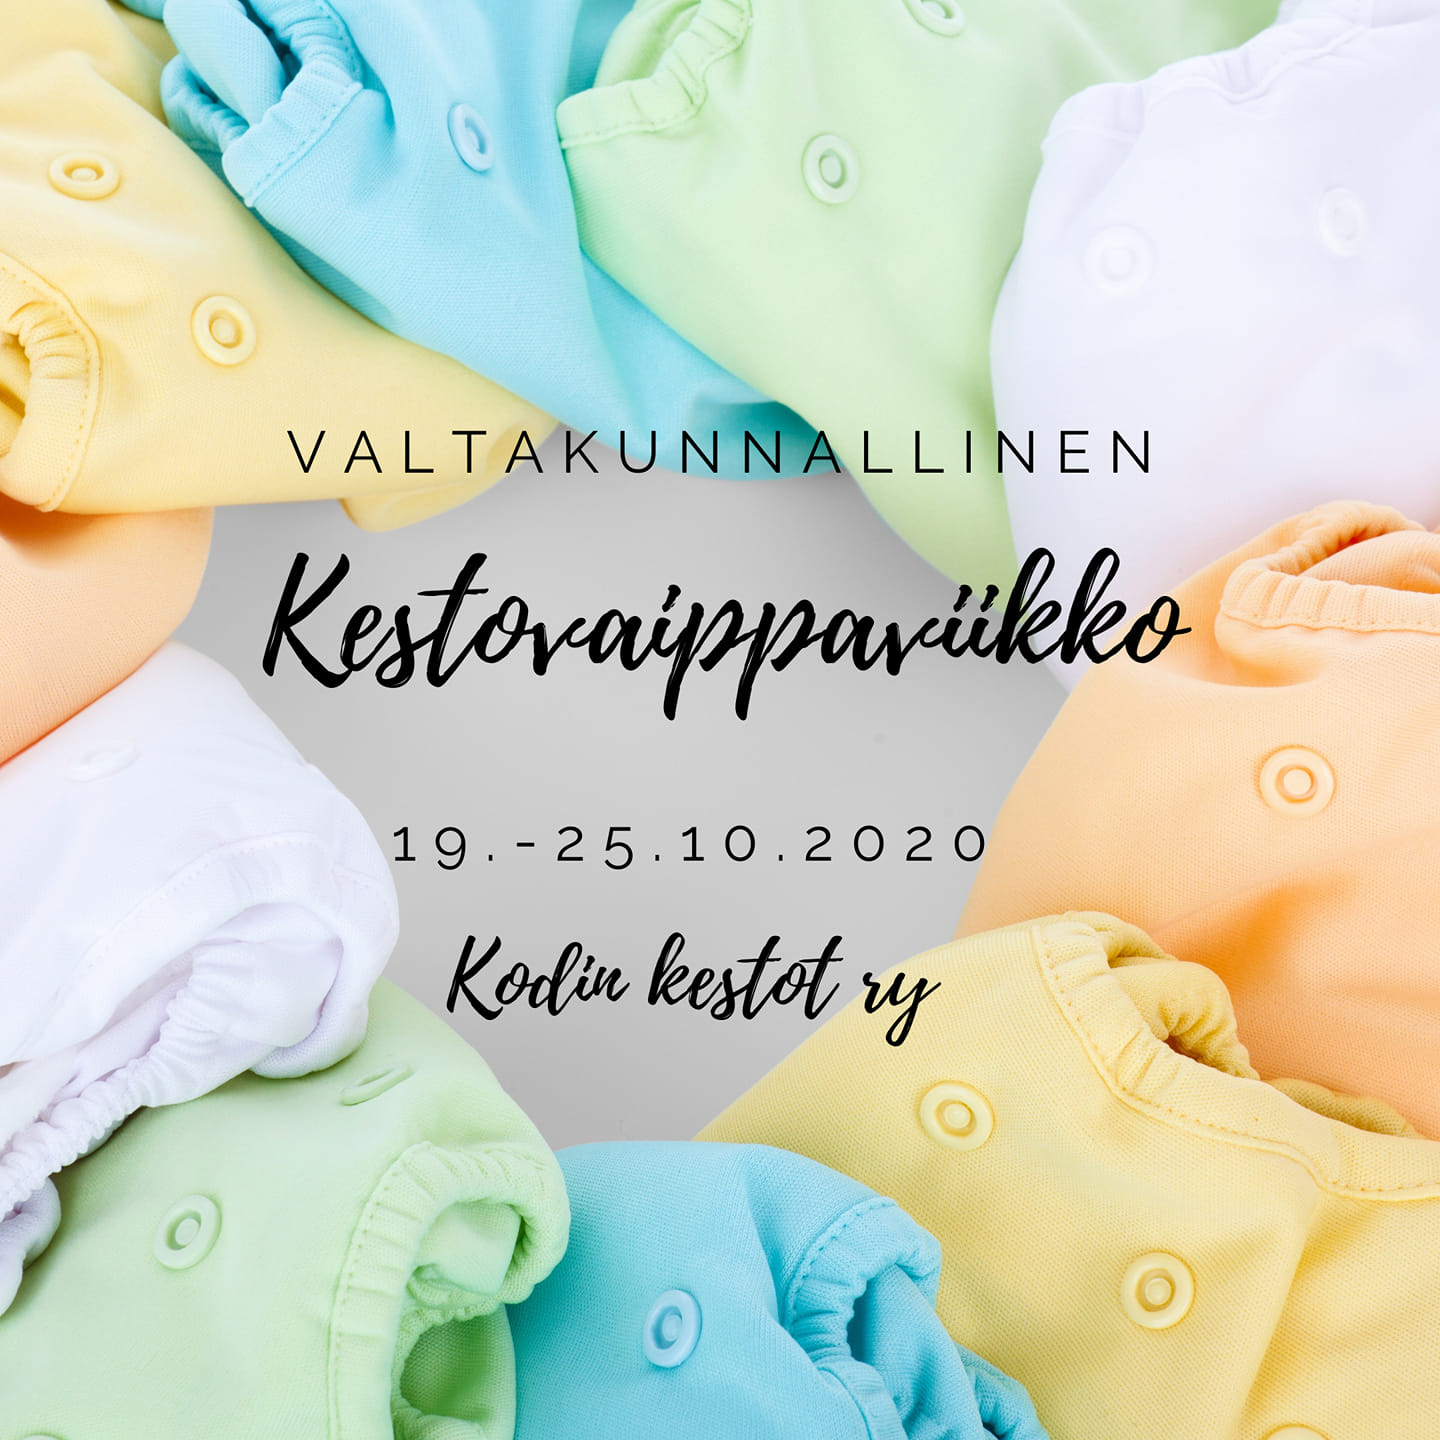 You are currently viewing Valtakunnallinen kestovaippaviikko 19.-25.10.2020